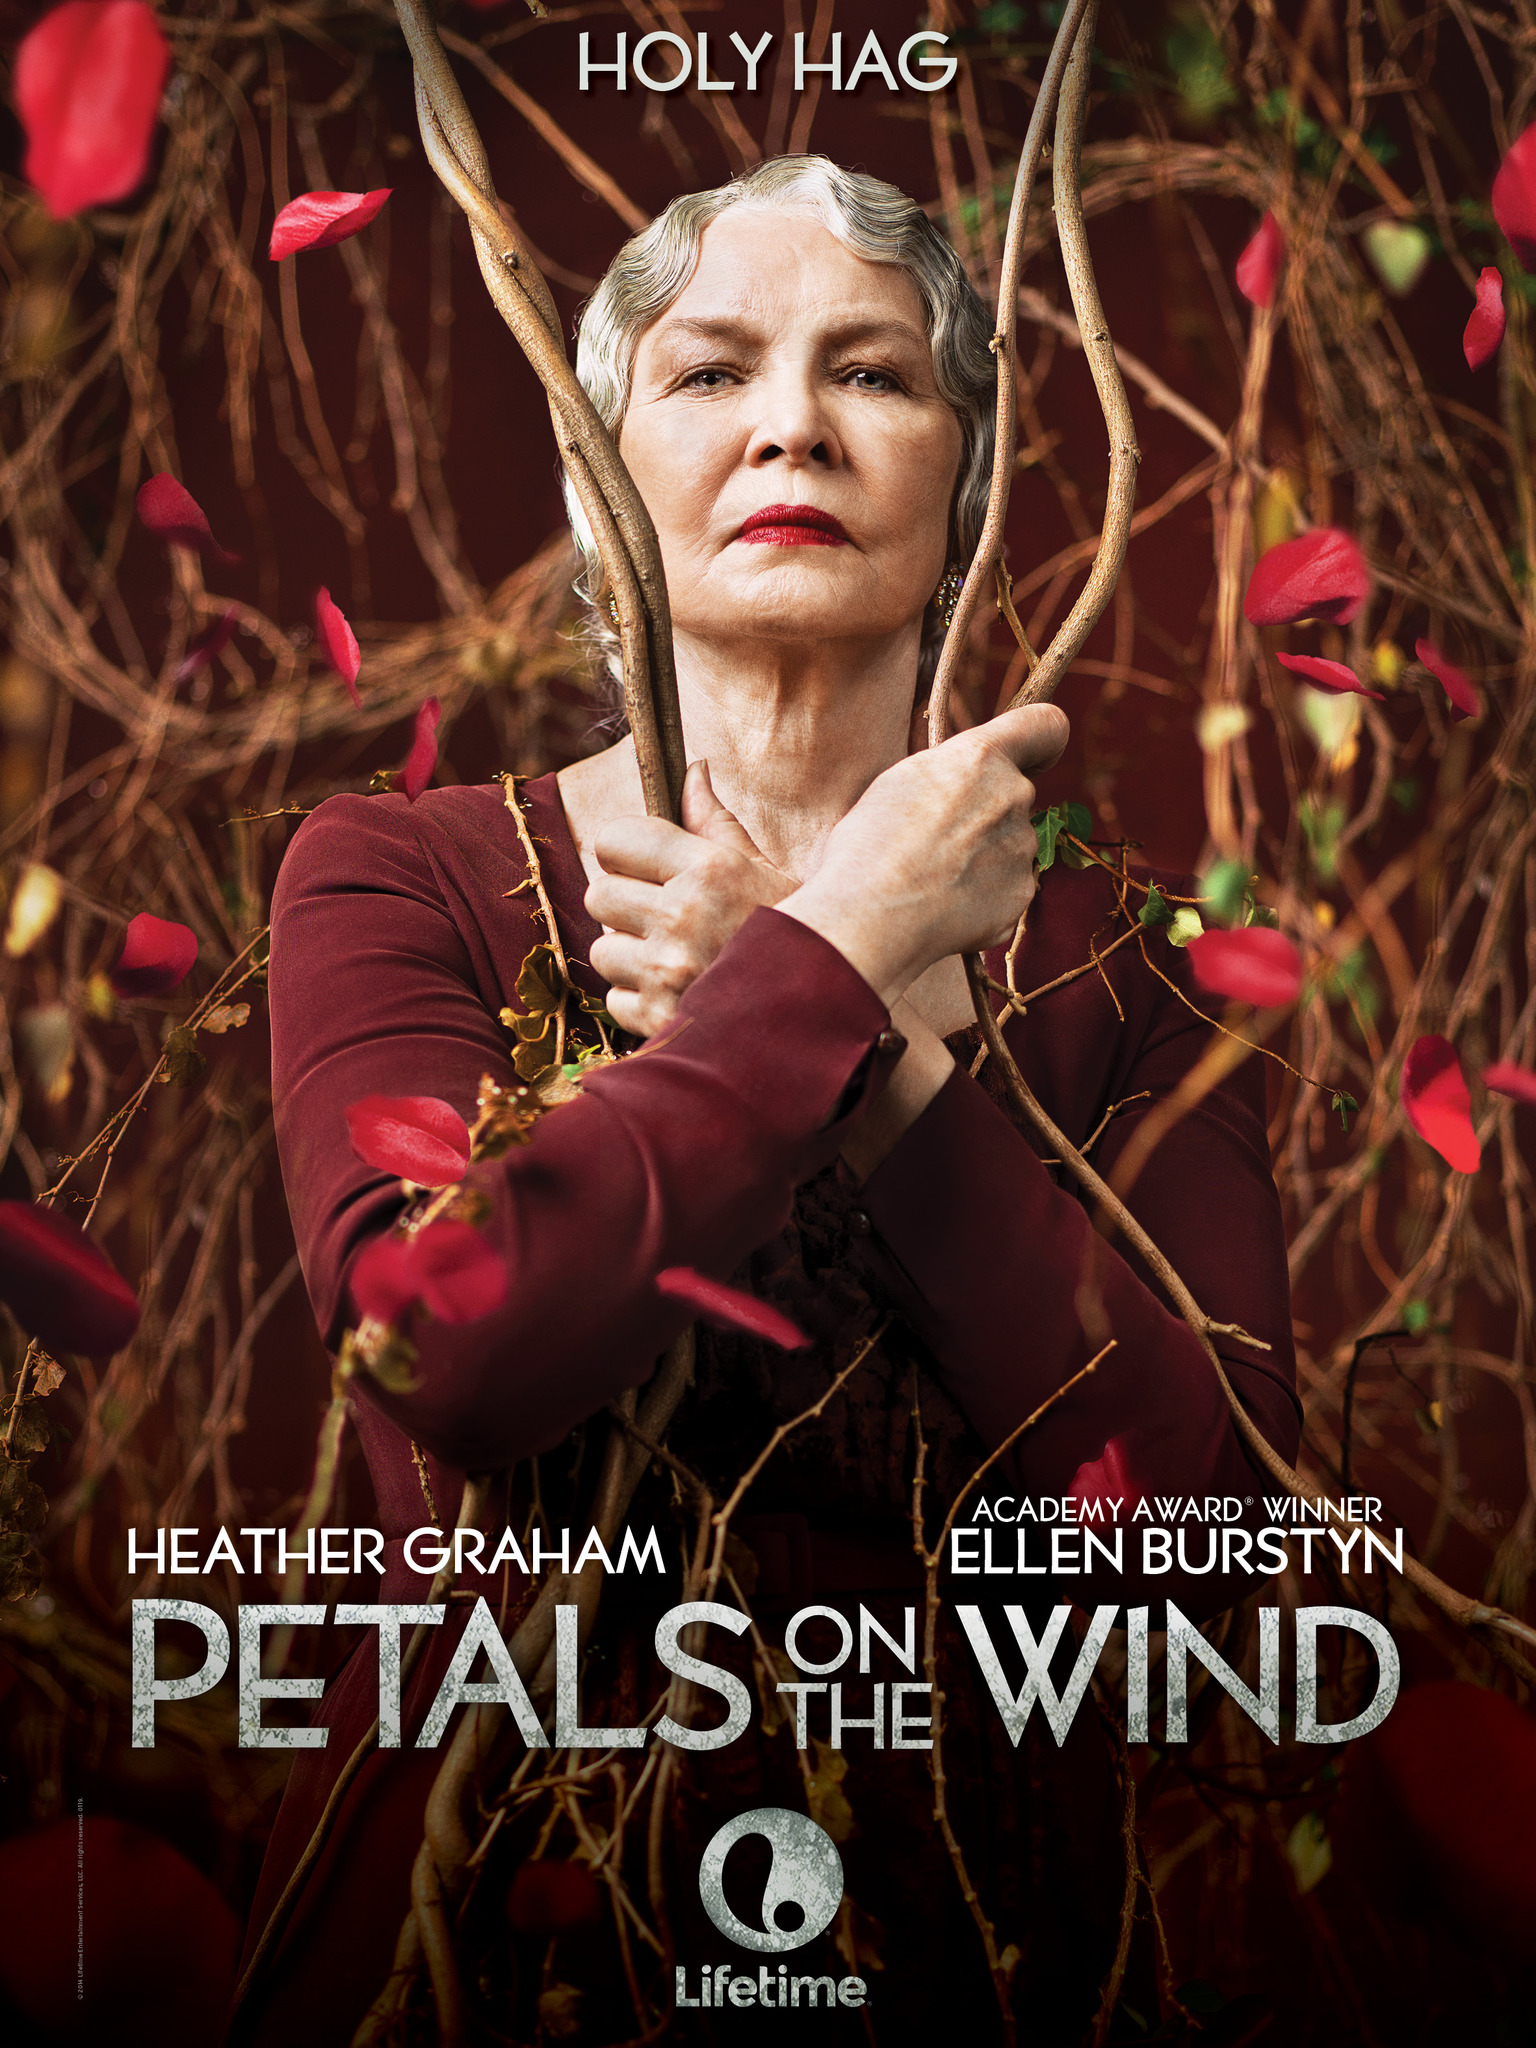 ดูหนังออนไลน์ฟรี Petals on the Wind (2014) เพทัล ออน เดอะ วินด์